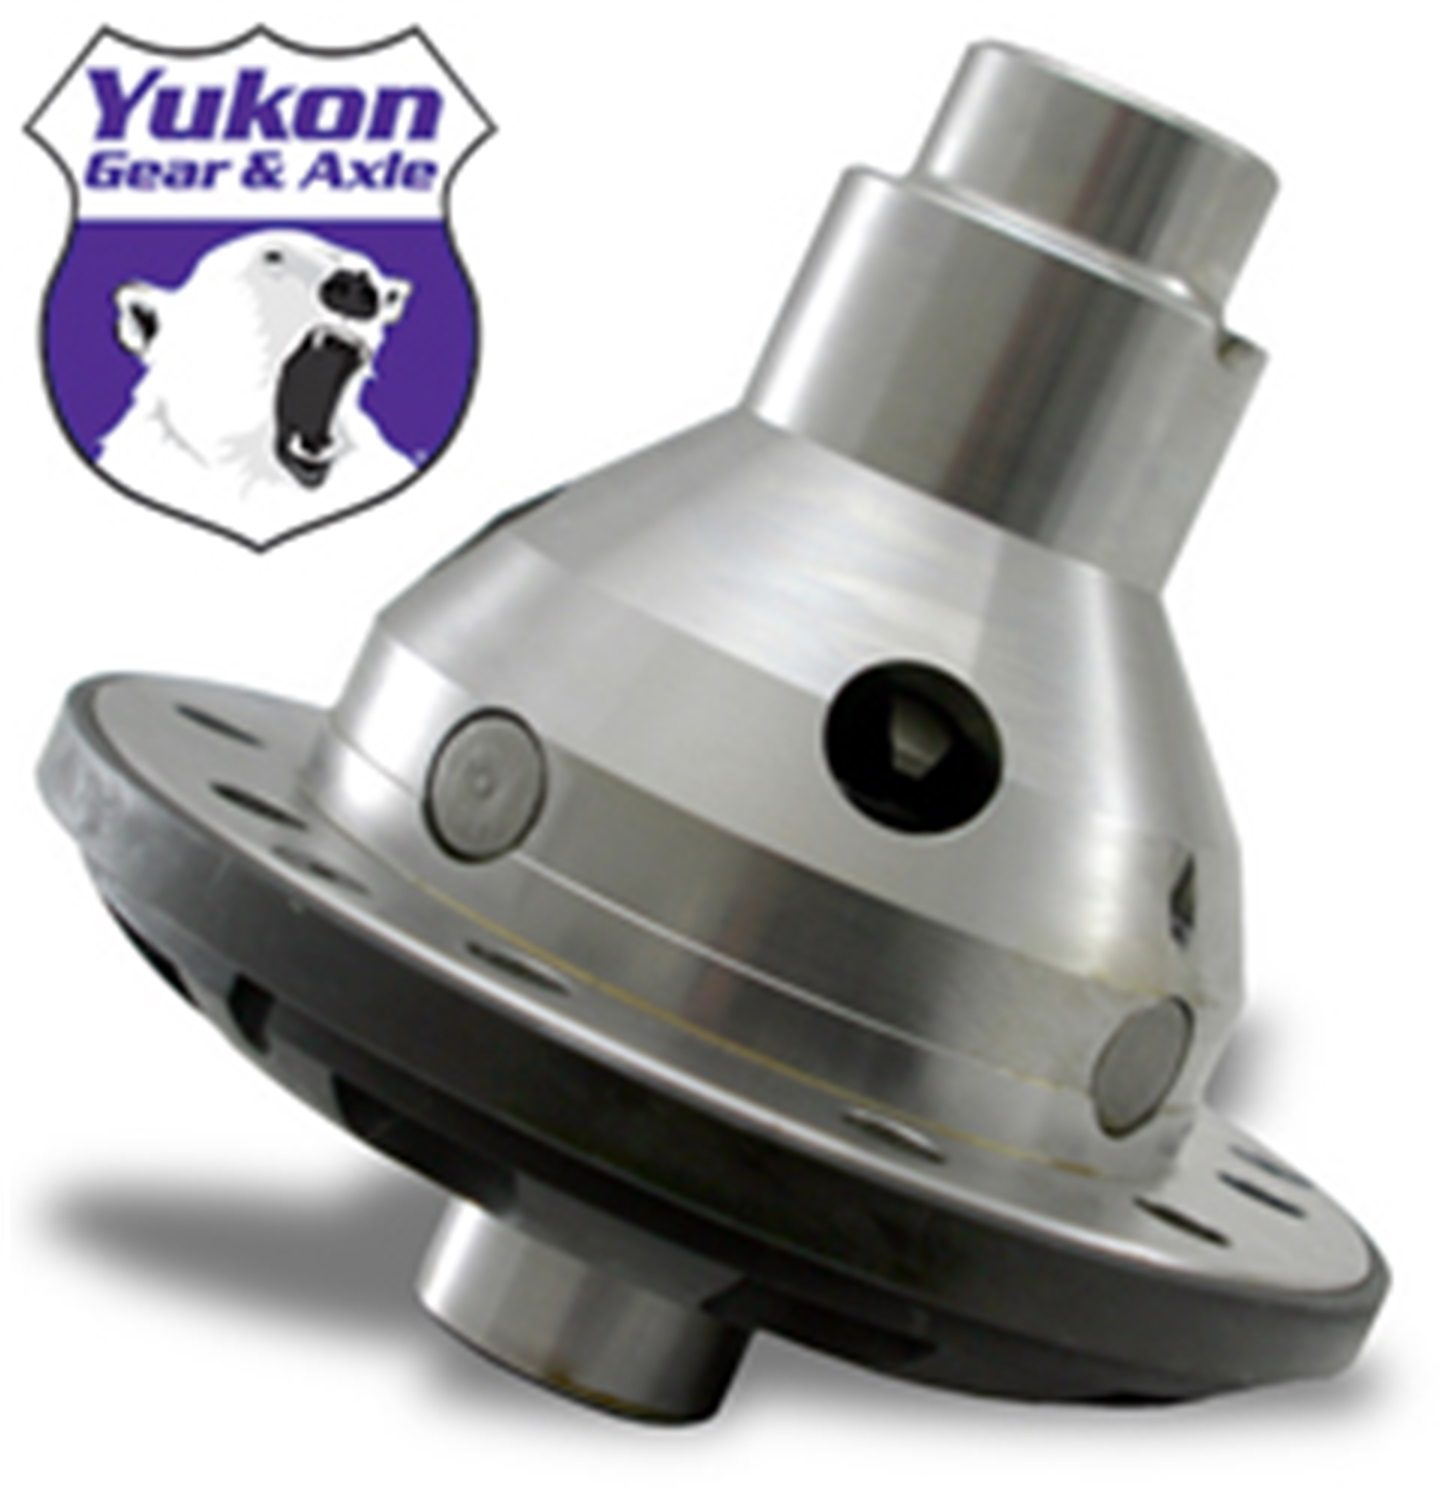 Yukon Gear & Axle Yukon Gear & Axle YDGF8-28-AG Yukon Trac-Loc Differential